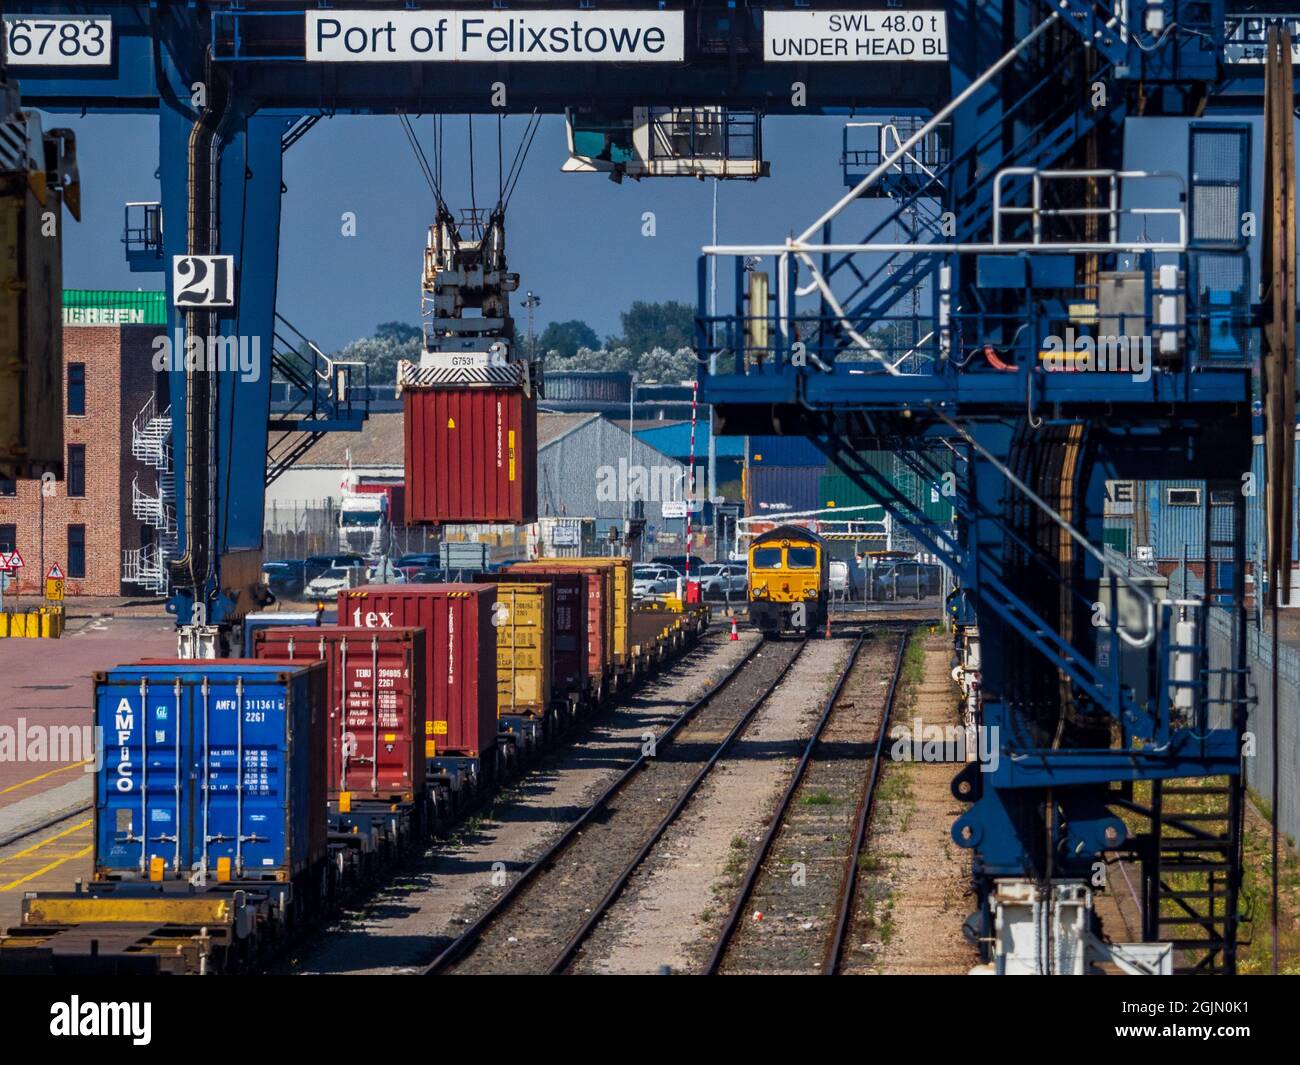 Rail Freight UK - Contenedores intermodales cargados en trenes de carga en el Puerto Felixstowe, el puerto de contenedores más grande del Reino Unido. Foto de stock